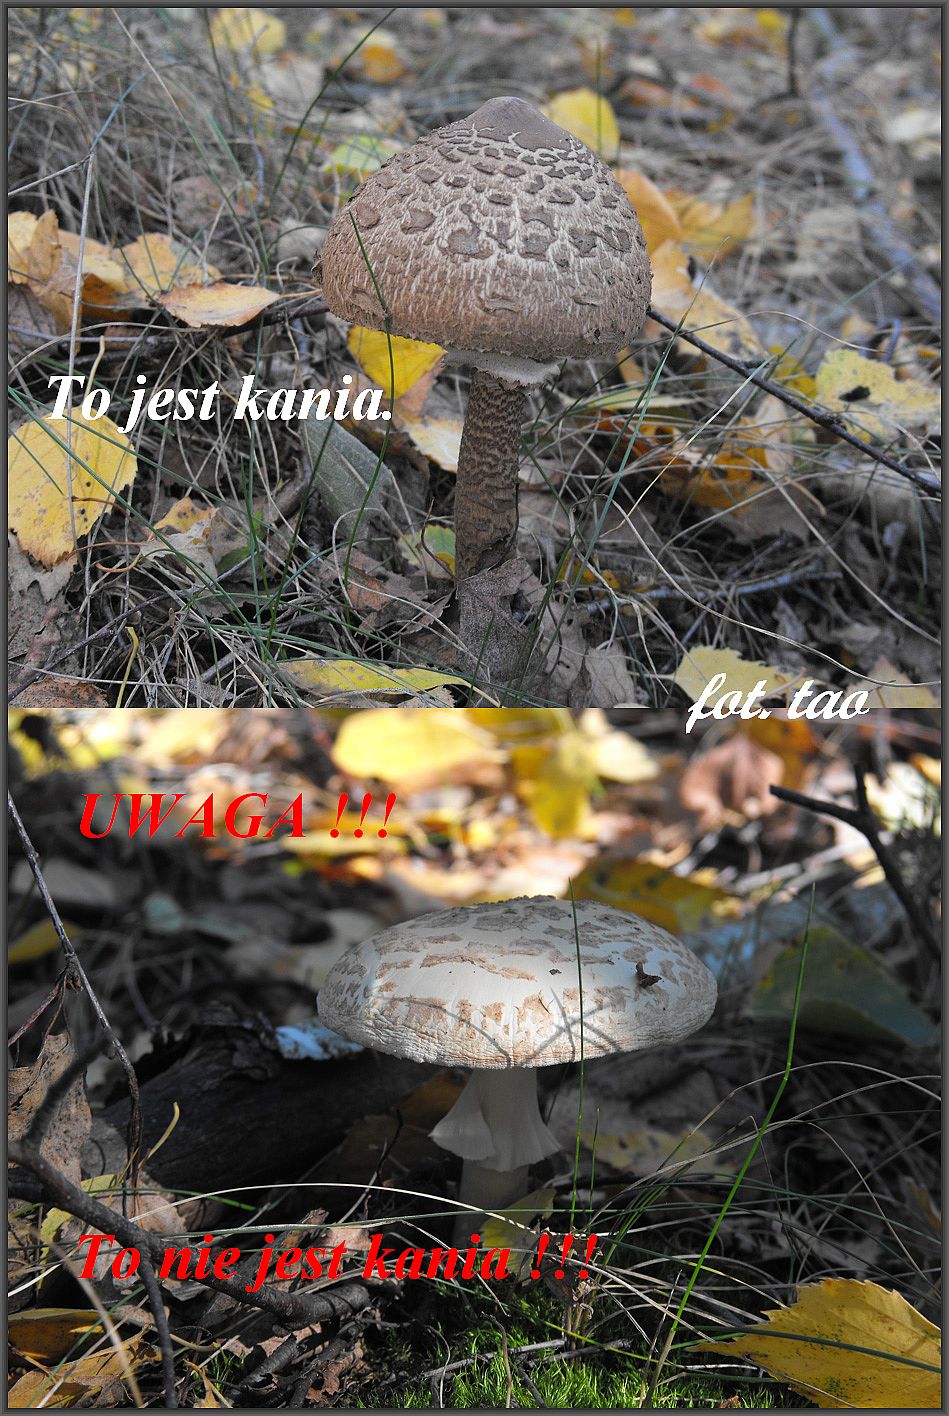 Czas na grzyby. W tym sezonie w okolicznych lasach jest wysyp kani, zbierać czy nie zbierać? Oczywiście zbierać, bo kania to jeden z najsmaczniejszych  grzybów, ale nie mylić z muchomorem, patrz na foto. Lasy w Walerianowie k/Sierpca, 4.10.2013 r.